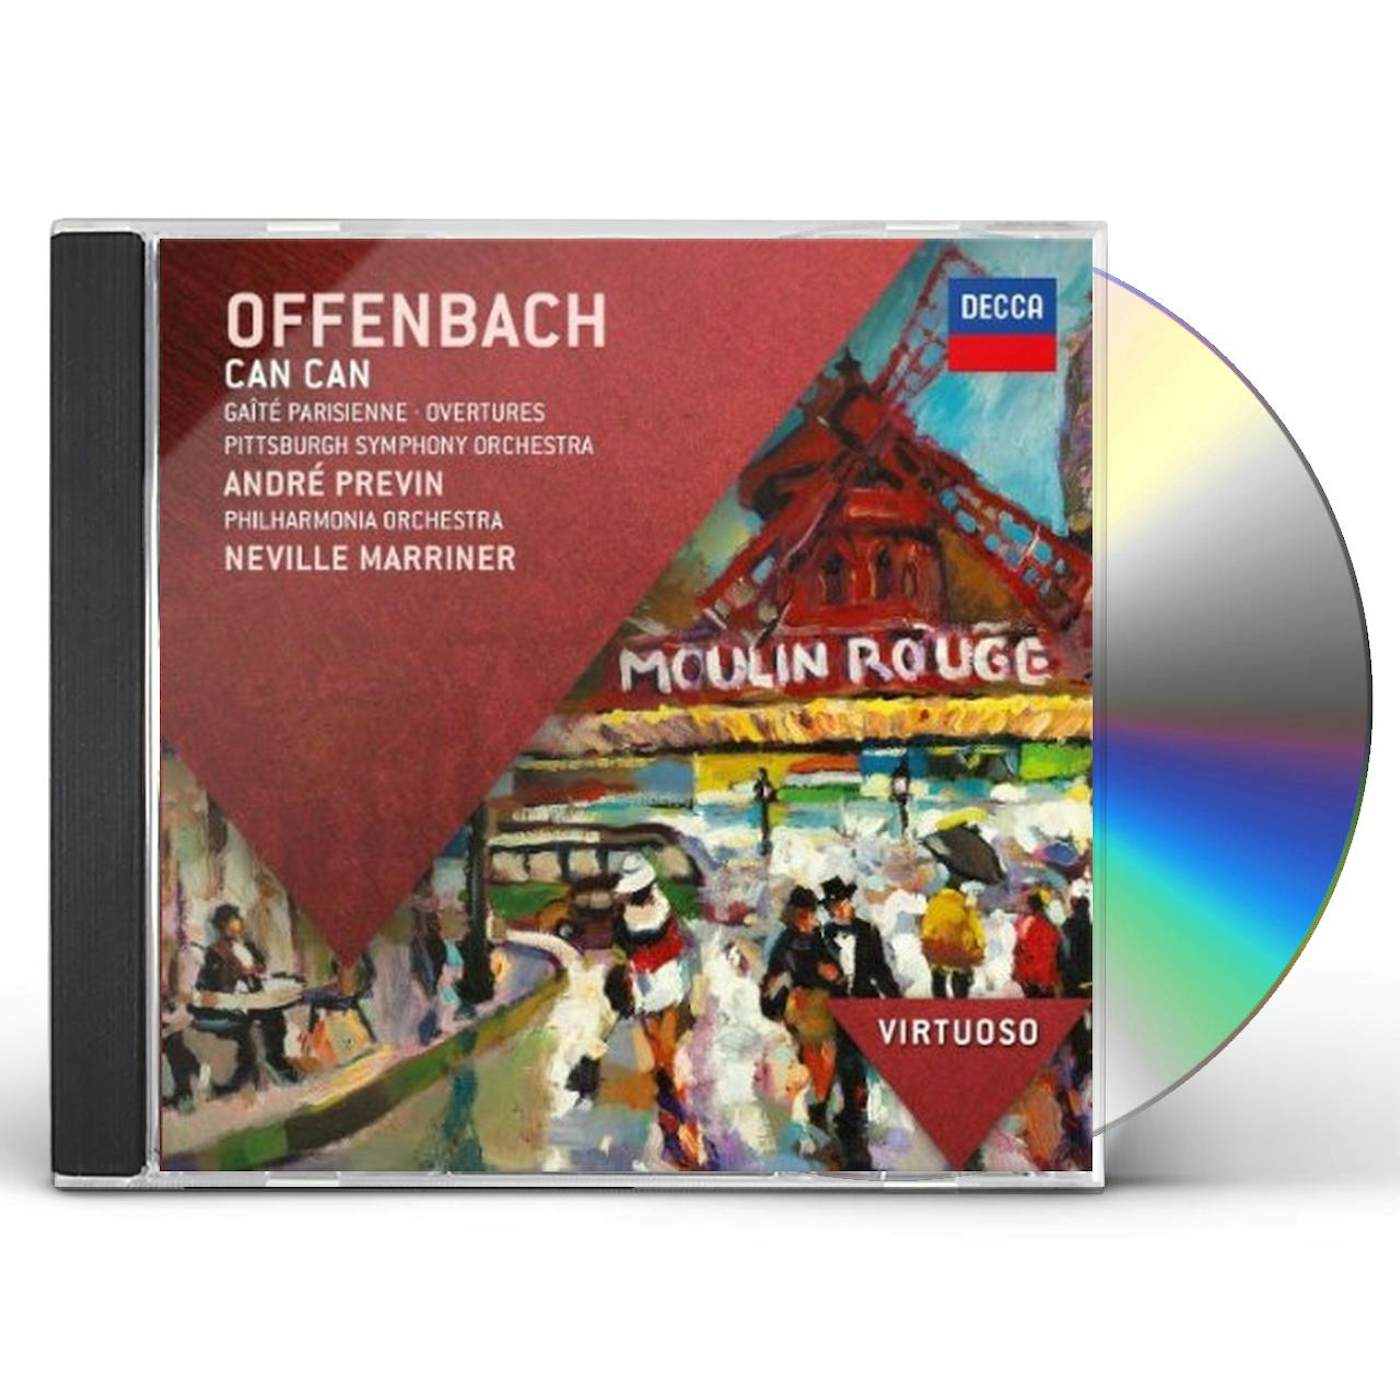 Offenbach VIRTUOSO: CAN CAN GAITE PARISIENNE CD